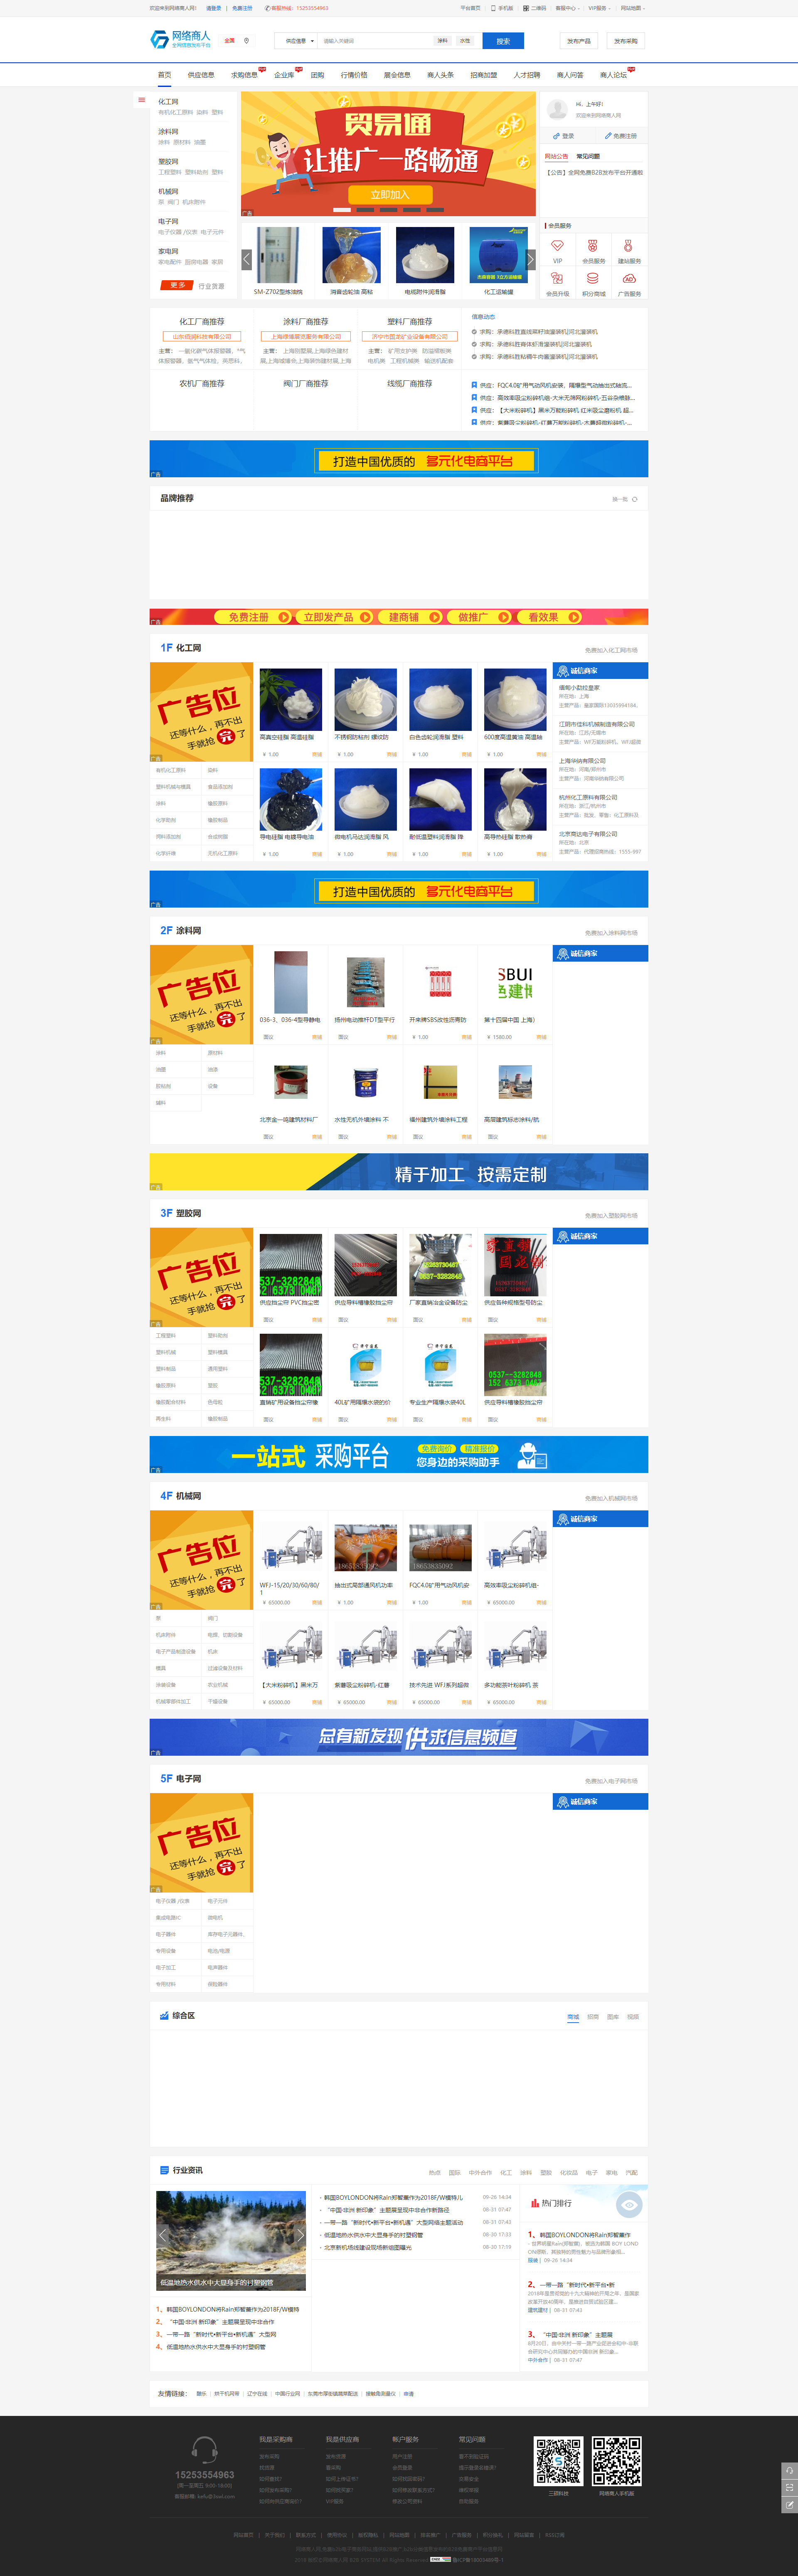 网络商人网-免费的中国行业产品B2B供求分类信息发布推广平台B2B电子商务网站.png